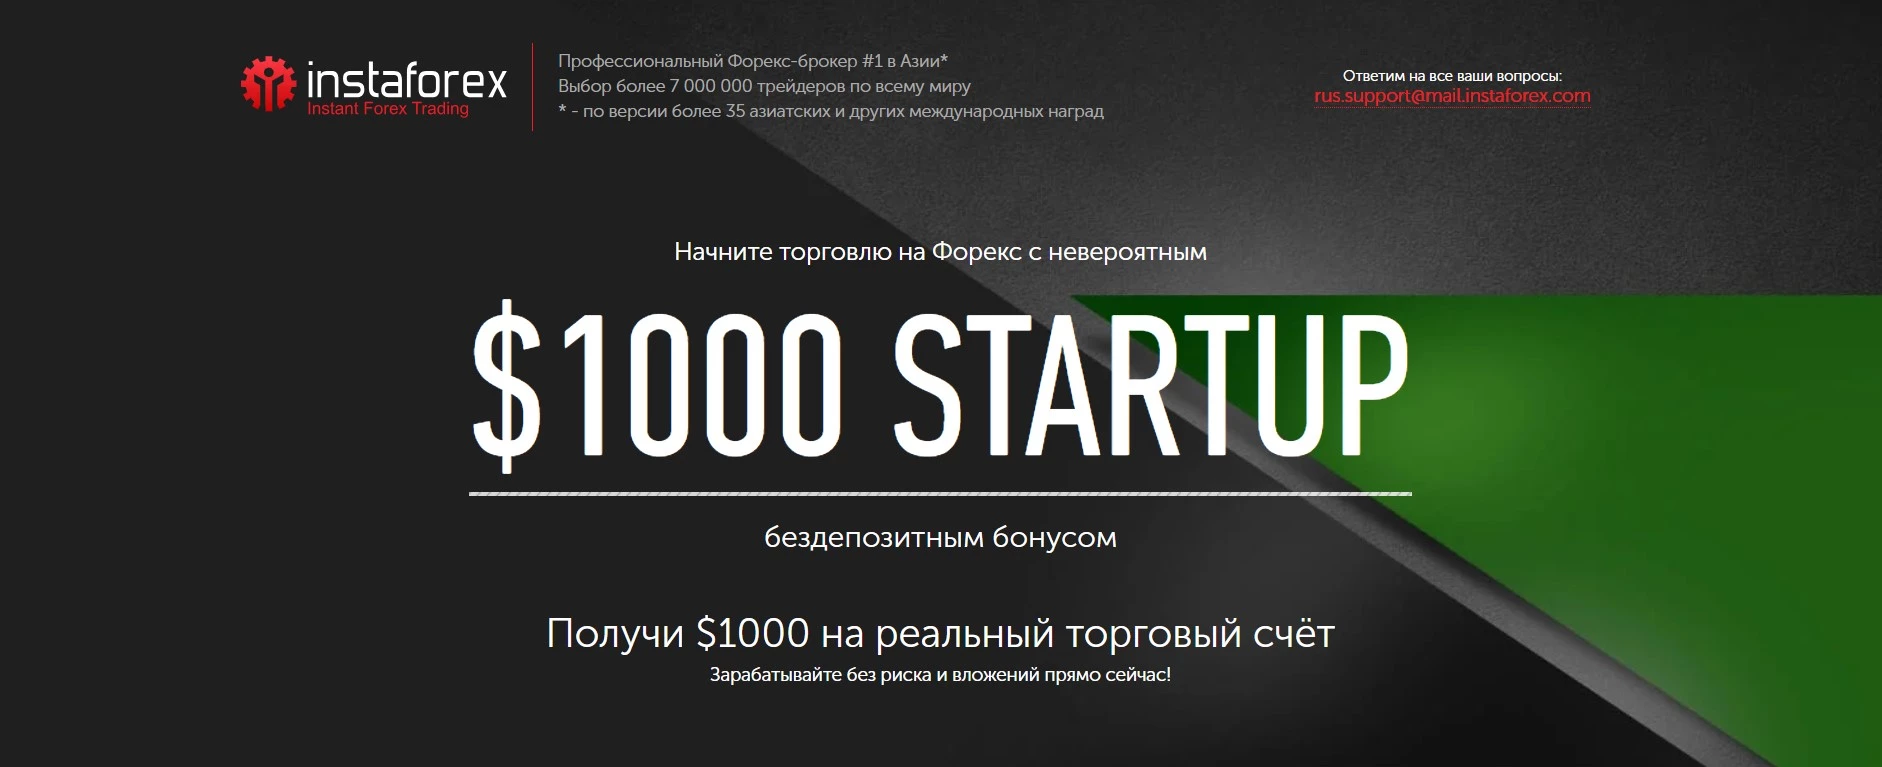 Бонус StartUp от InstaForex